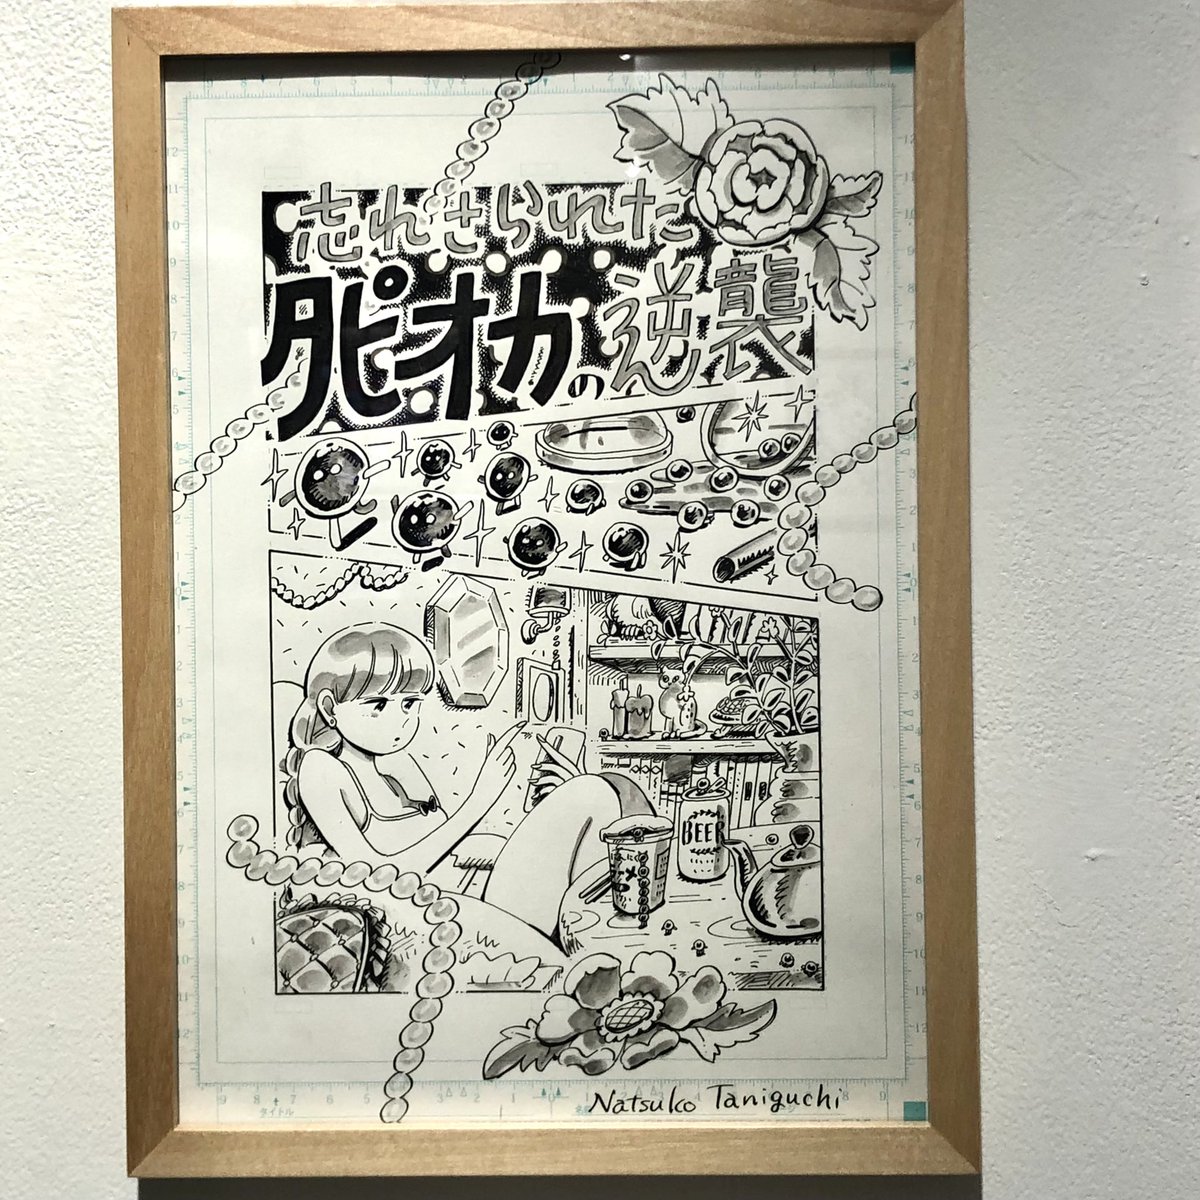 漫画家・谷口菜津子さん@nco0707 の個展に行ってきました。漫画の1ページめをたくさん集めた「かのような」作品が40点ほど。ほんとにほんとに絵がうまい〜。6月27日まで! 